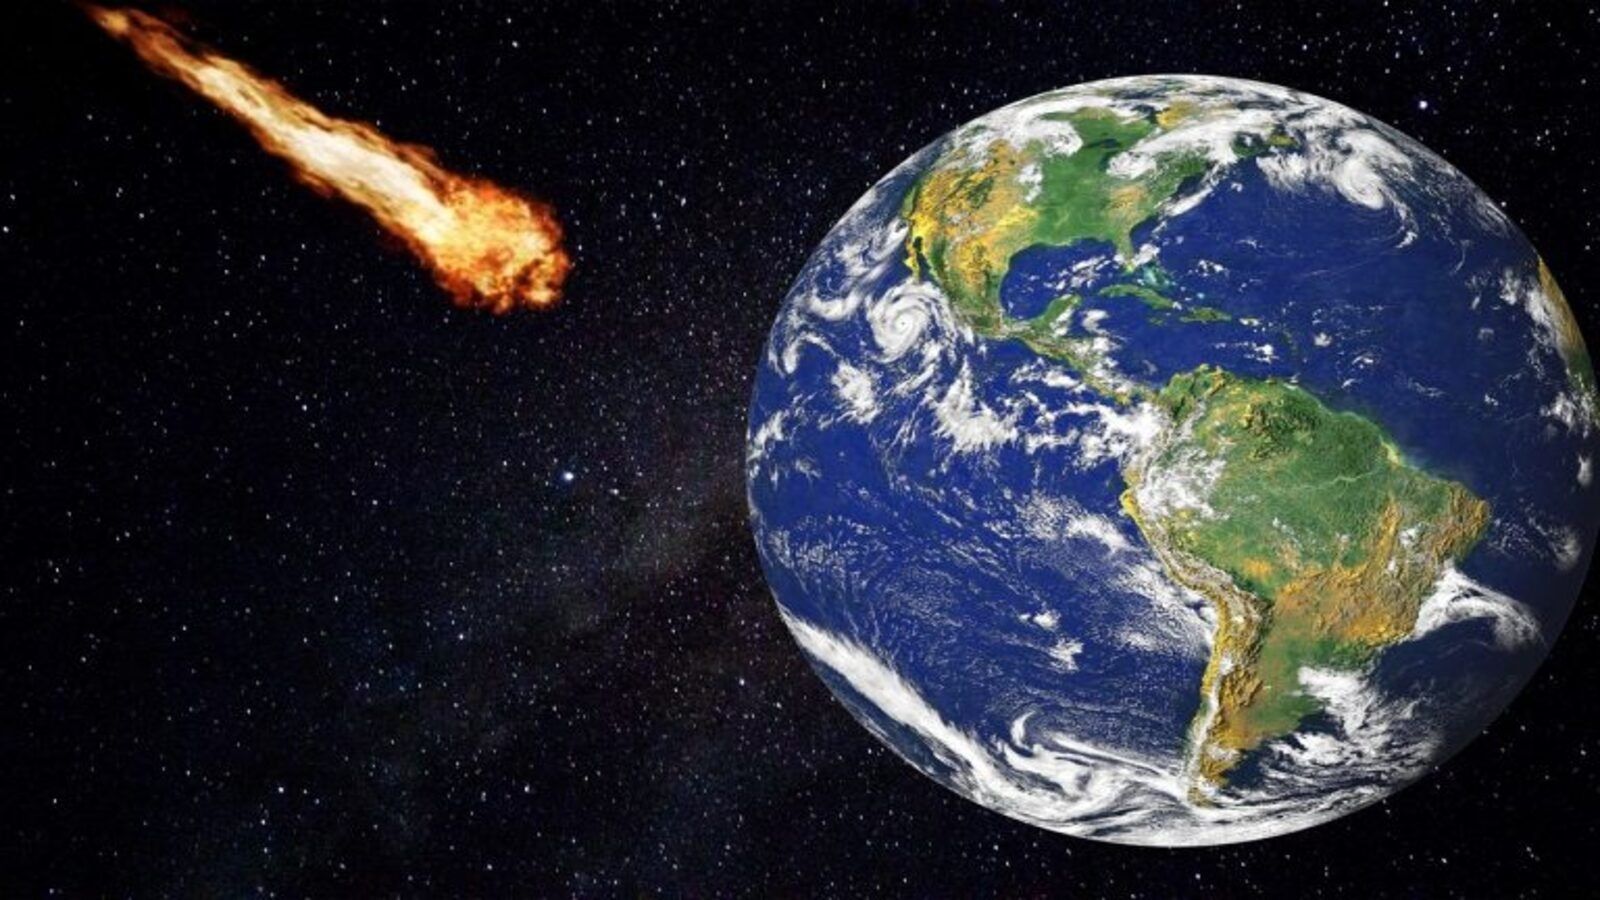 Applicazione che simula l'impatto di un asteroide sulla Terra